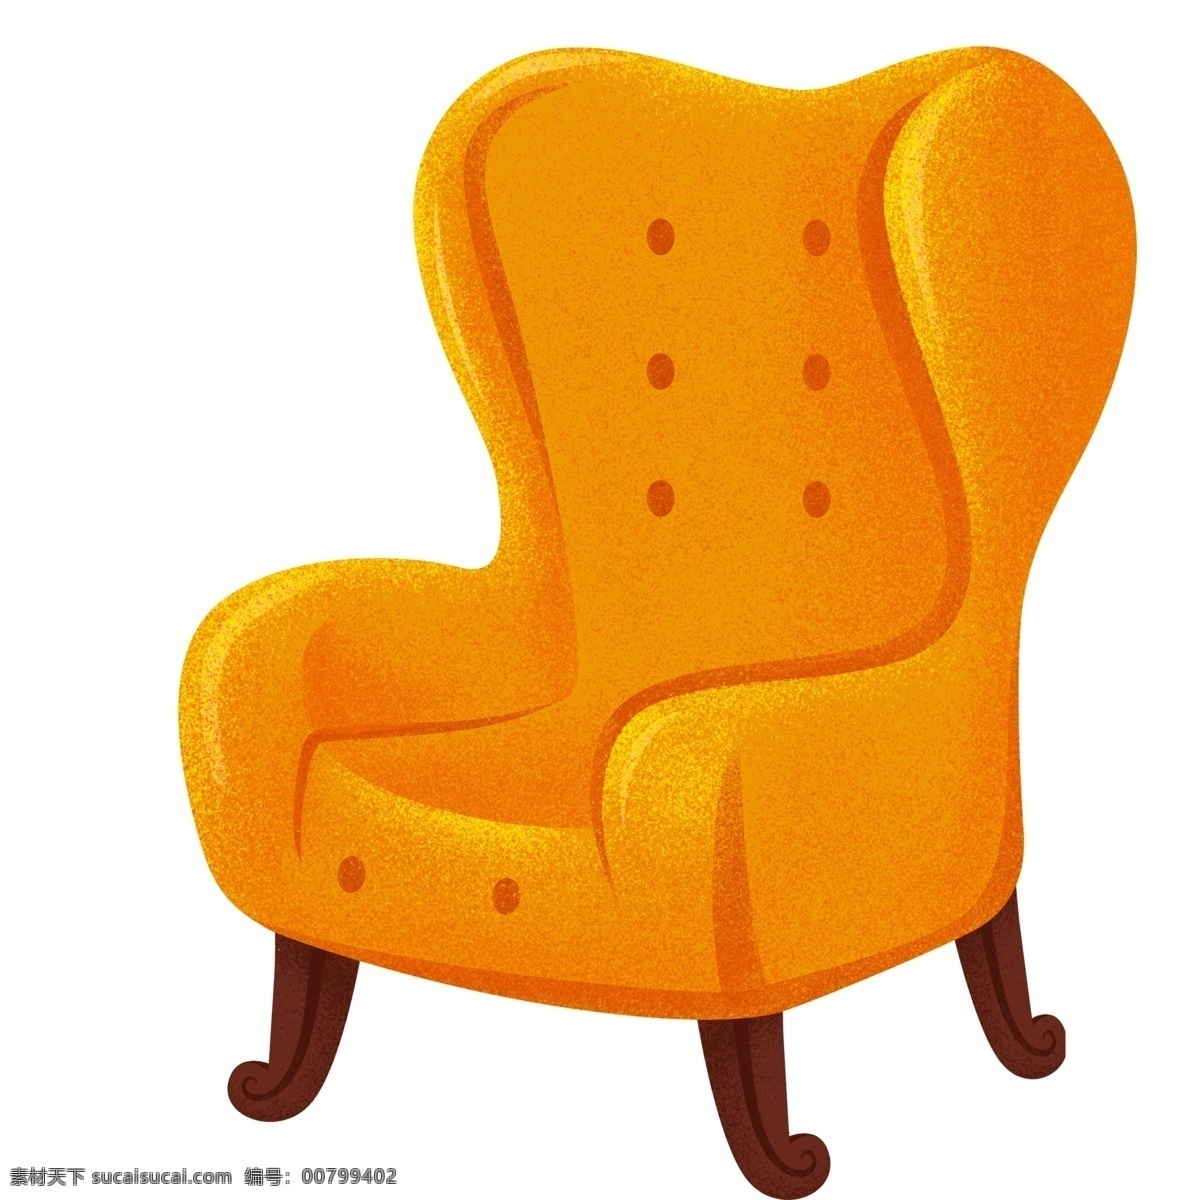 黄色 沙发 插画 椅子 卡通 彩色 水彩 创意 手绘 绘画元素 现代 简约 装饰 图案